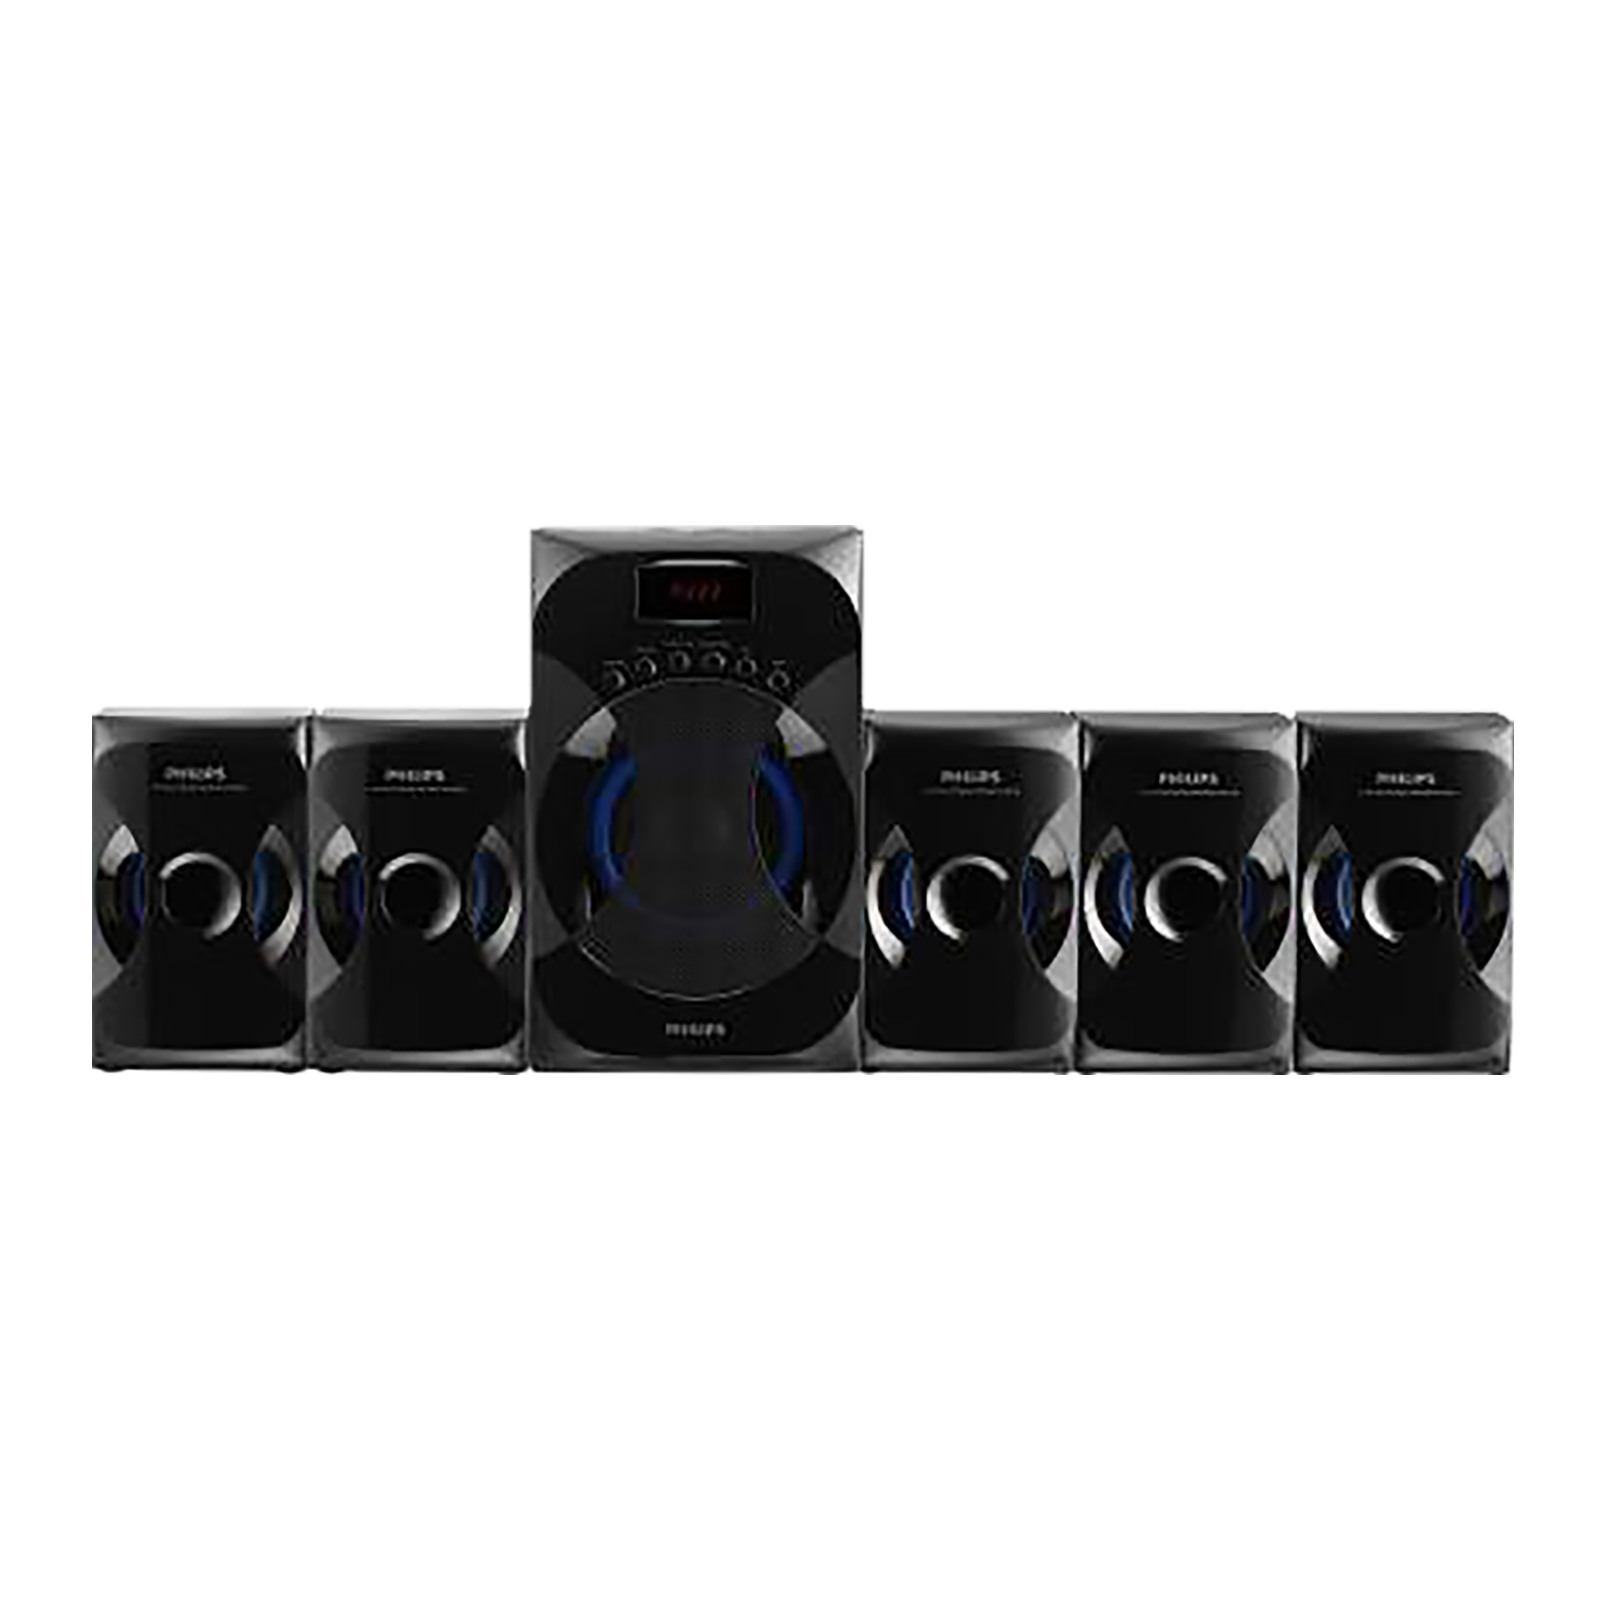 PHILIPS 45W Multimedia Speaker (Surround Sound, 5.1 Channel, Black)